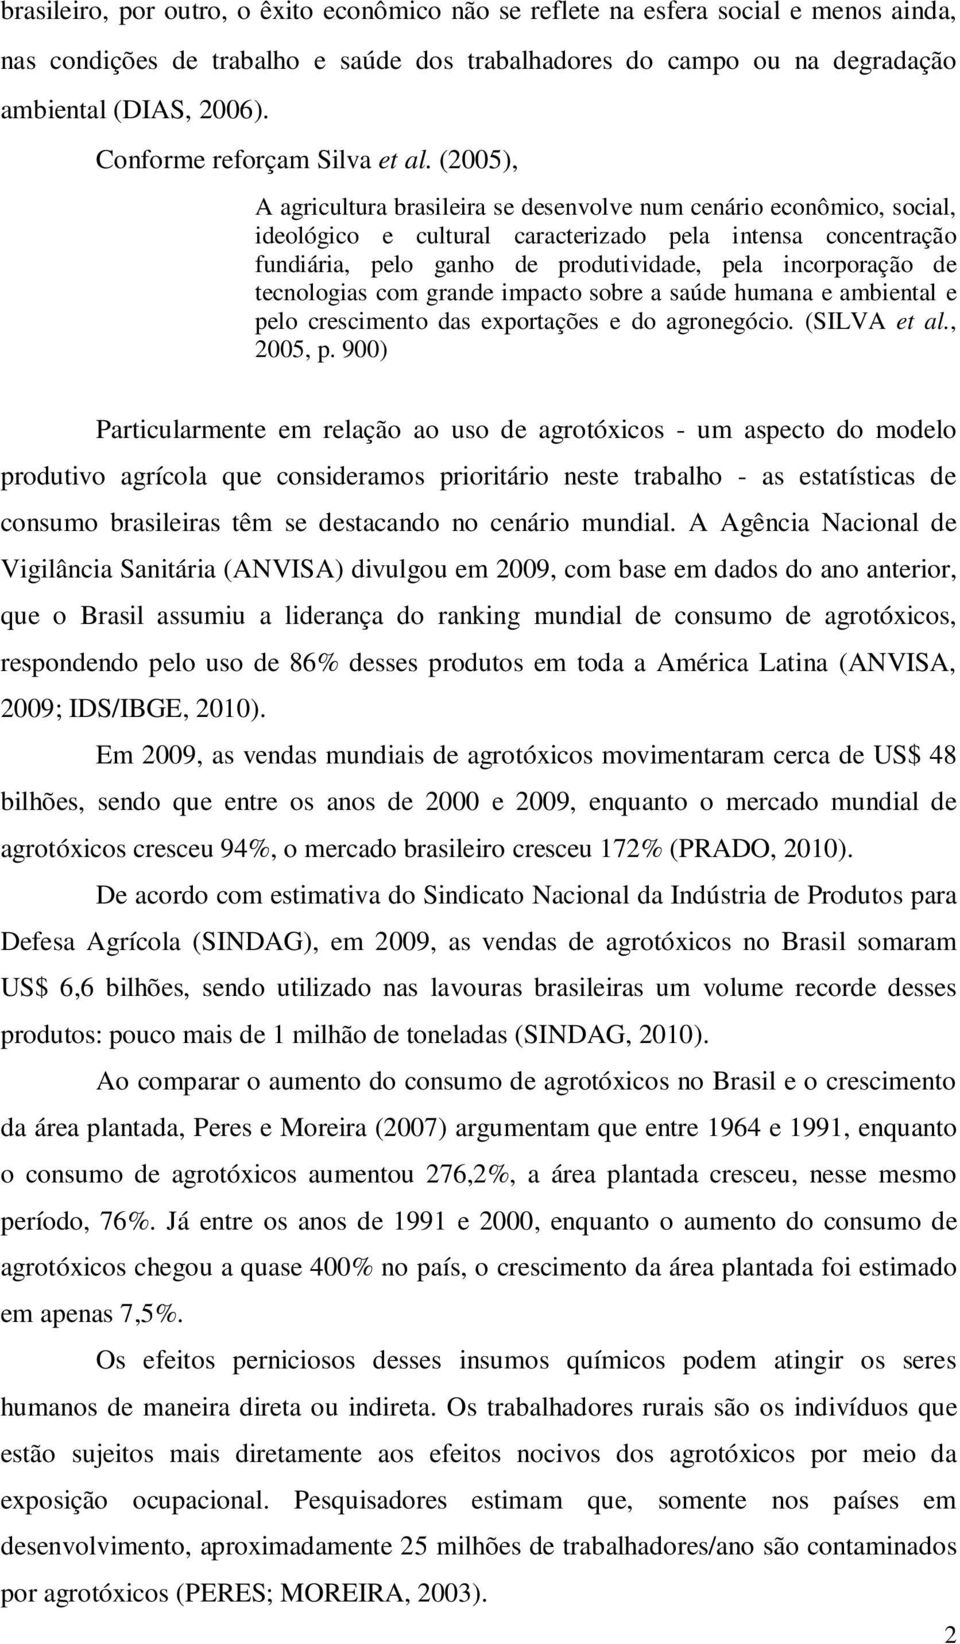 (2005), A agricultura brasileira se desenvolve num cenário econômico, social, ideológico e cultural caracterizado pela intensa concentração fundiária, pelo ganho de produtividade, pela incorporação